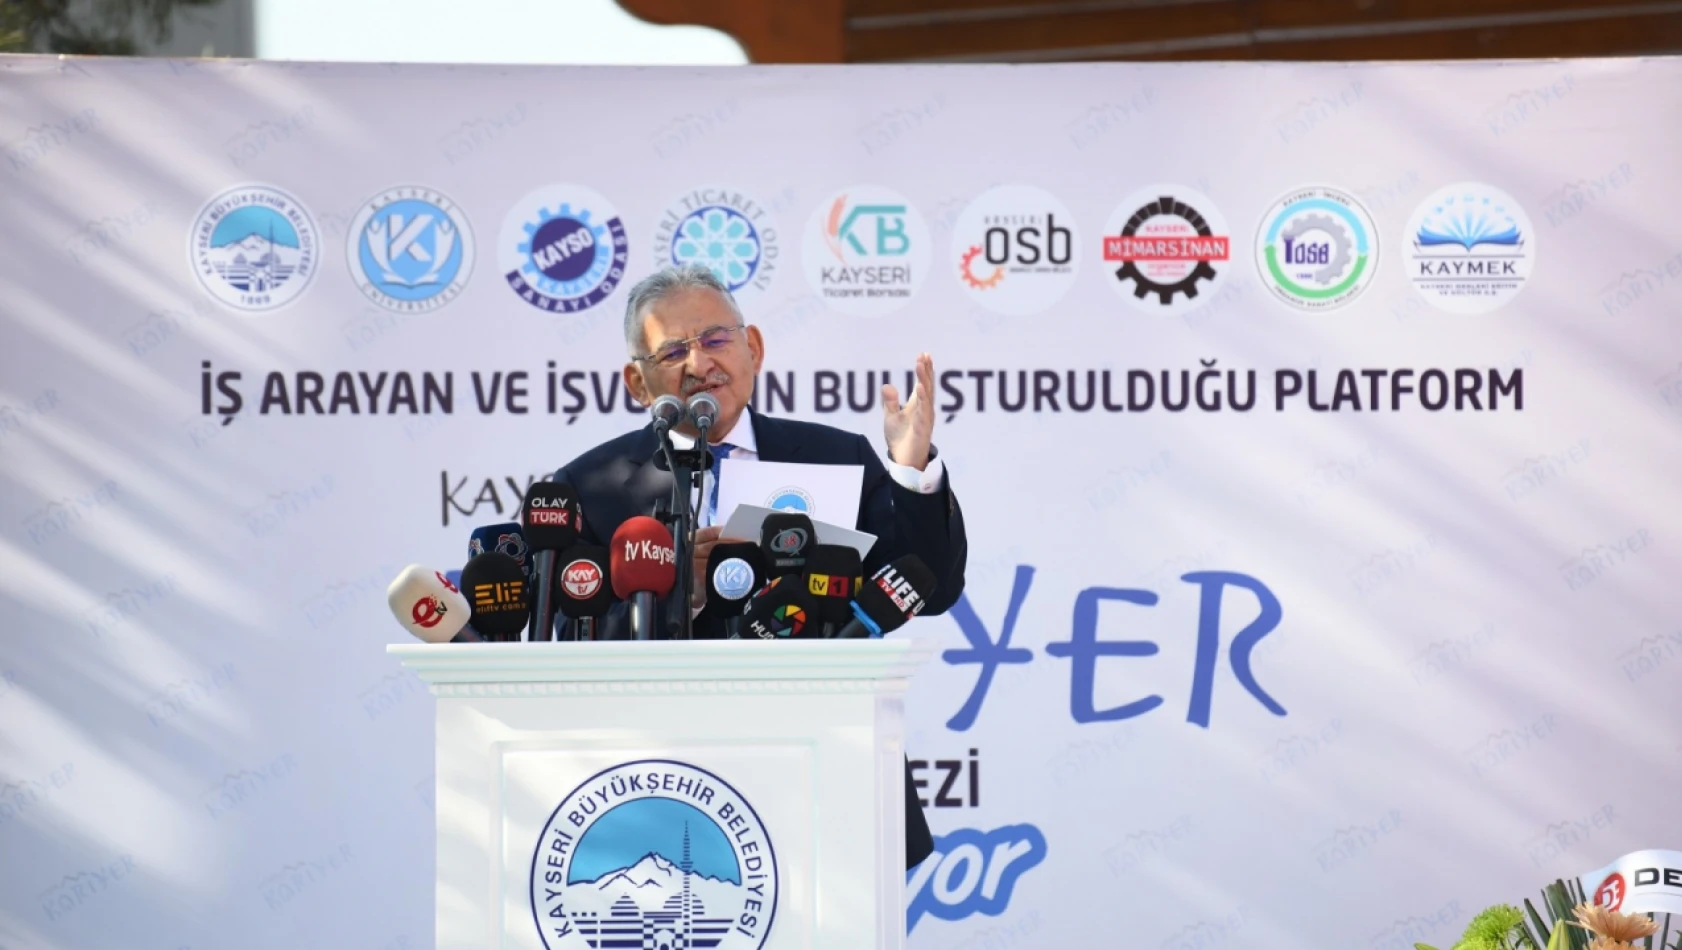 Büyükşehir'in 'Kayseri Kariyer' Başarısı